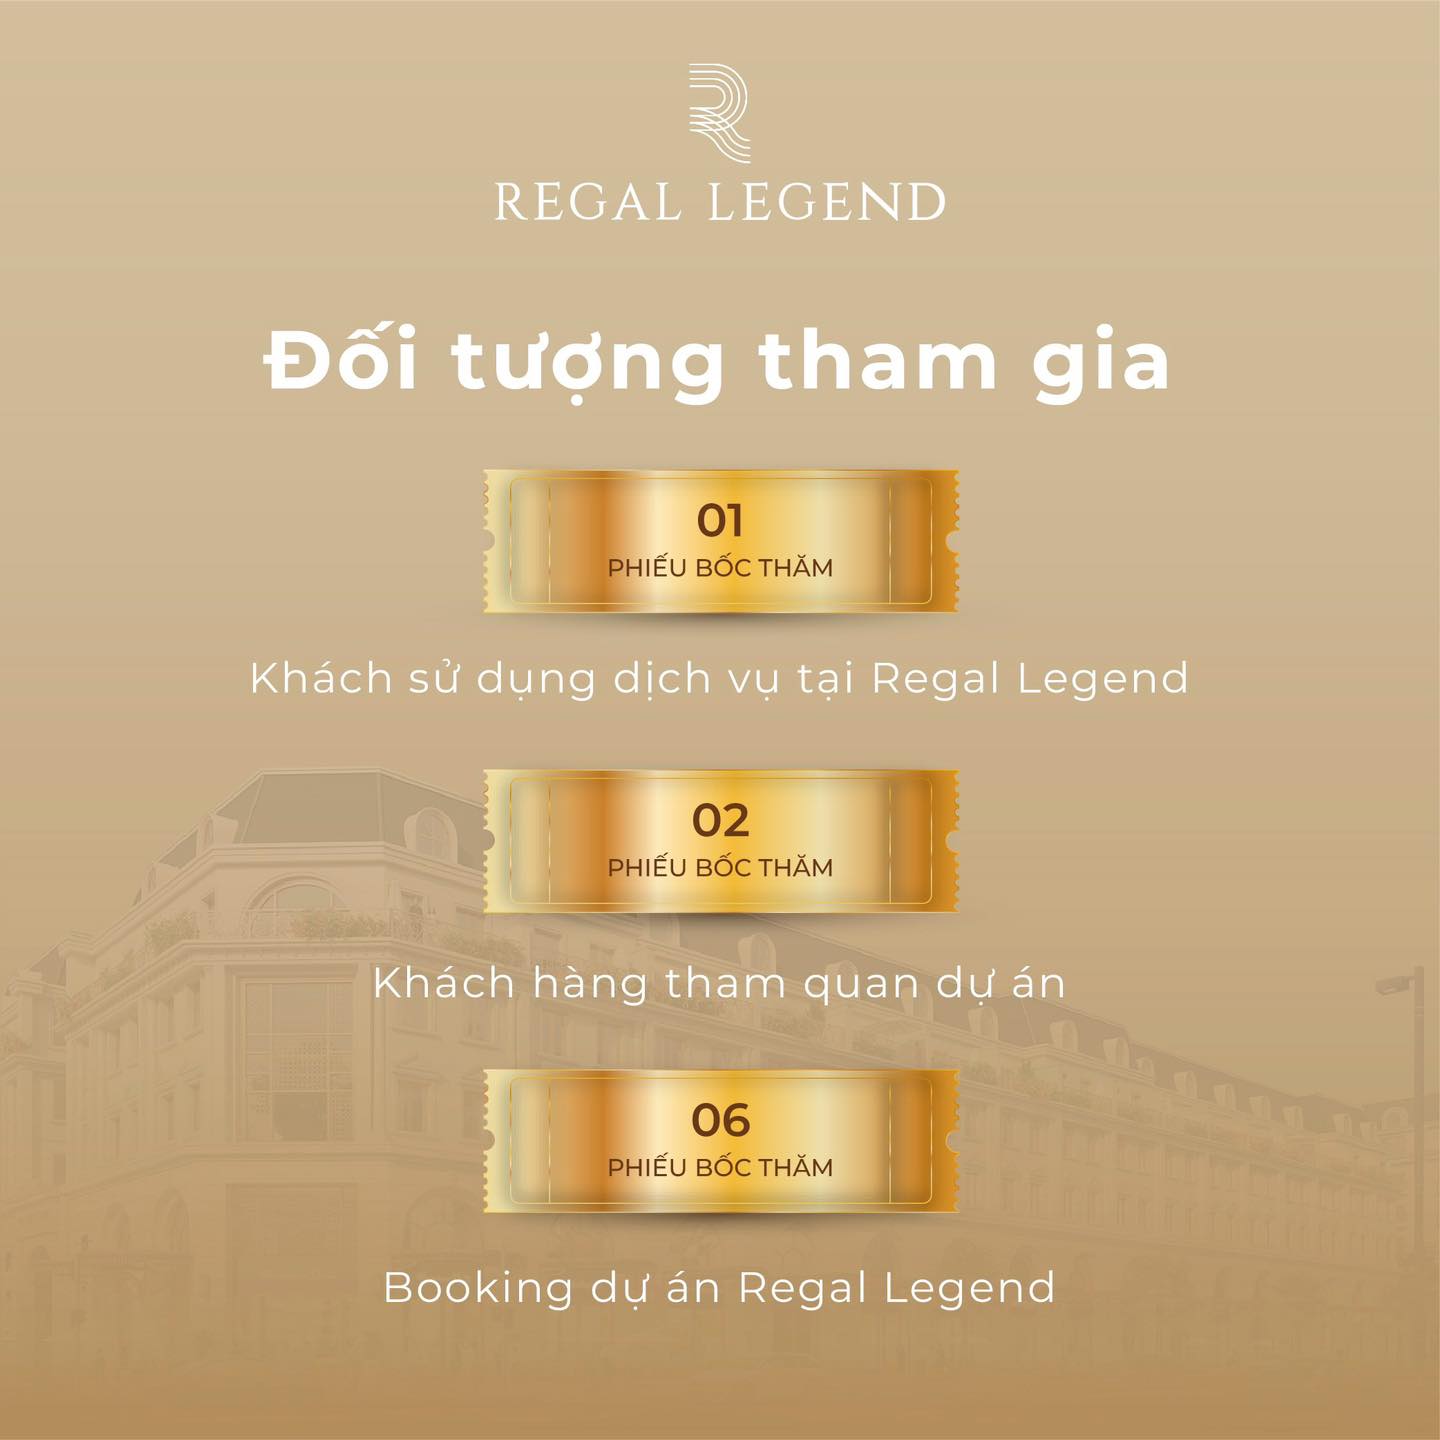 Trải nghiệm thương lưu - Nhận vàng ròng cùng Regal Legend - Viet Nam Smart City